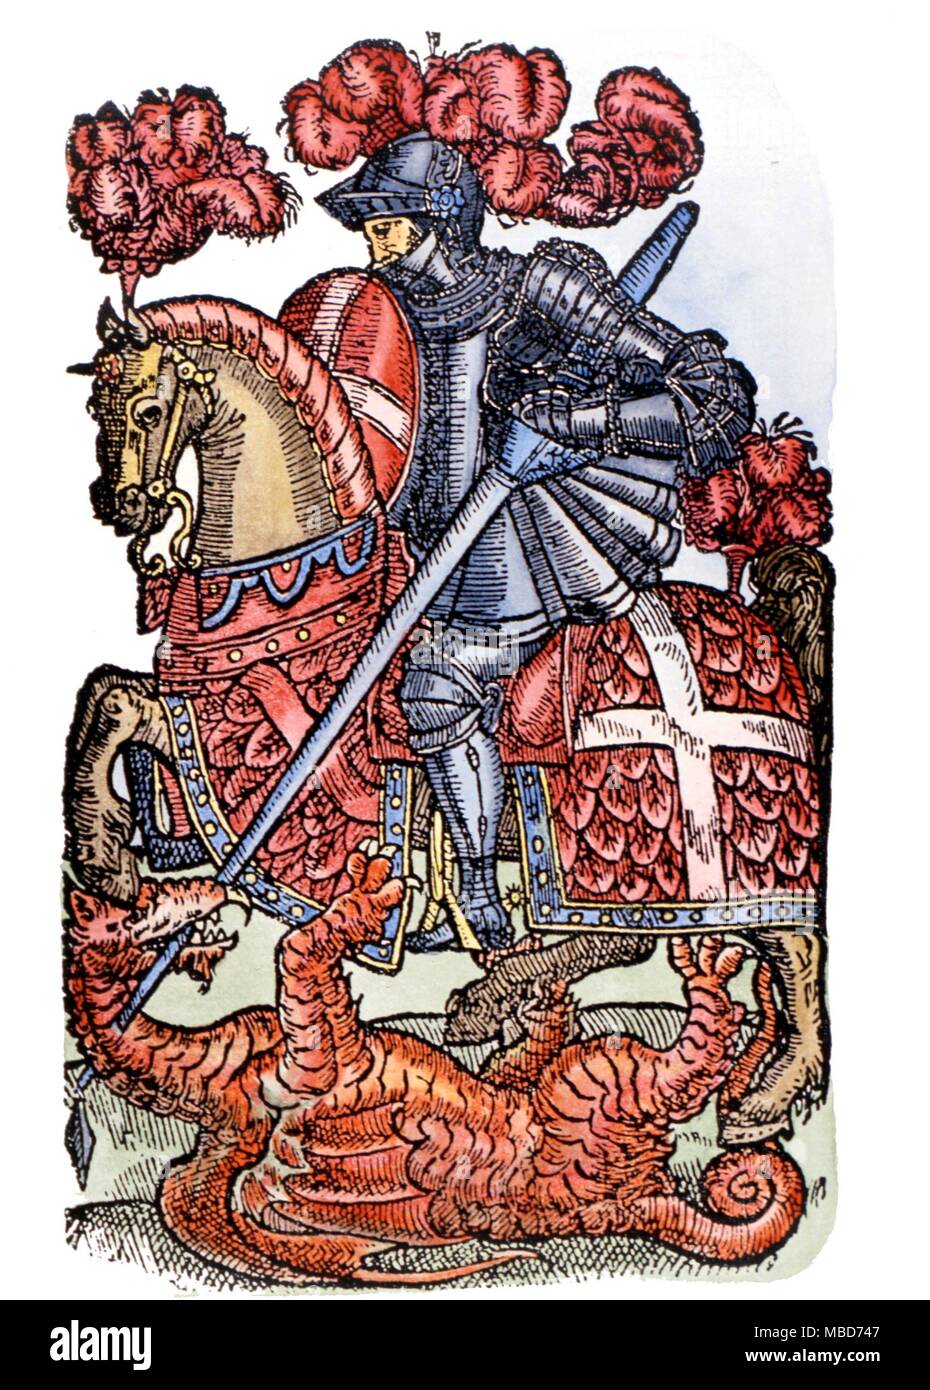 George et le Dragon - Image de Saint George maîtriser le dragon, de cheval. Frontispice gravure sur bois d'une édition ancienne de l'Edmund Spenser Faery Queen 1786 Banque D'Images